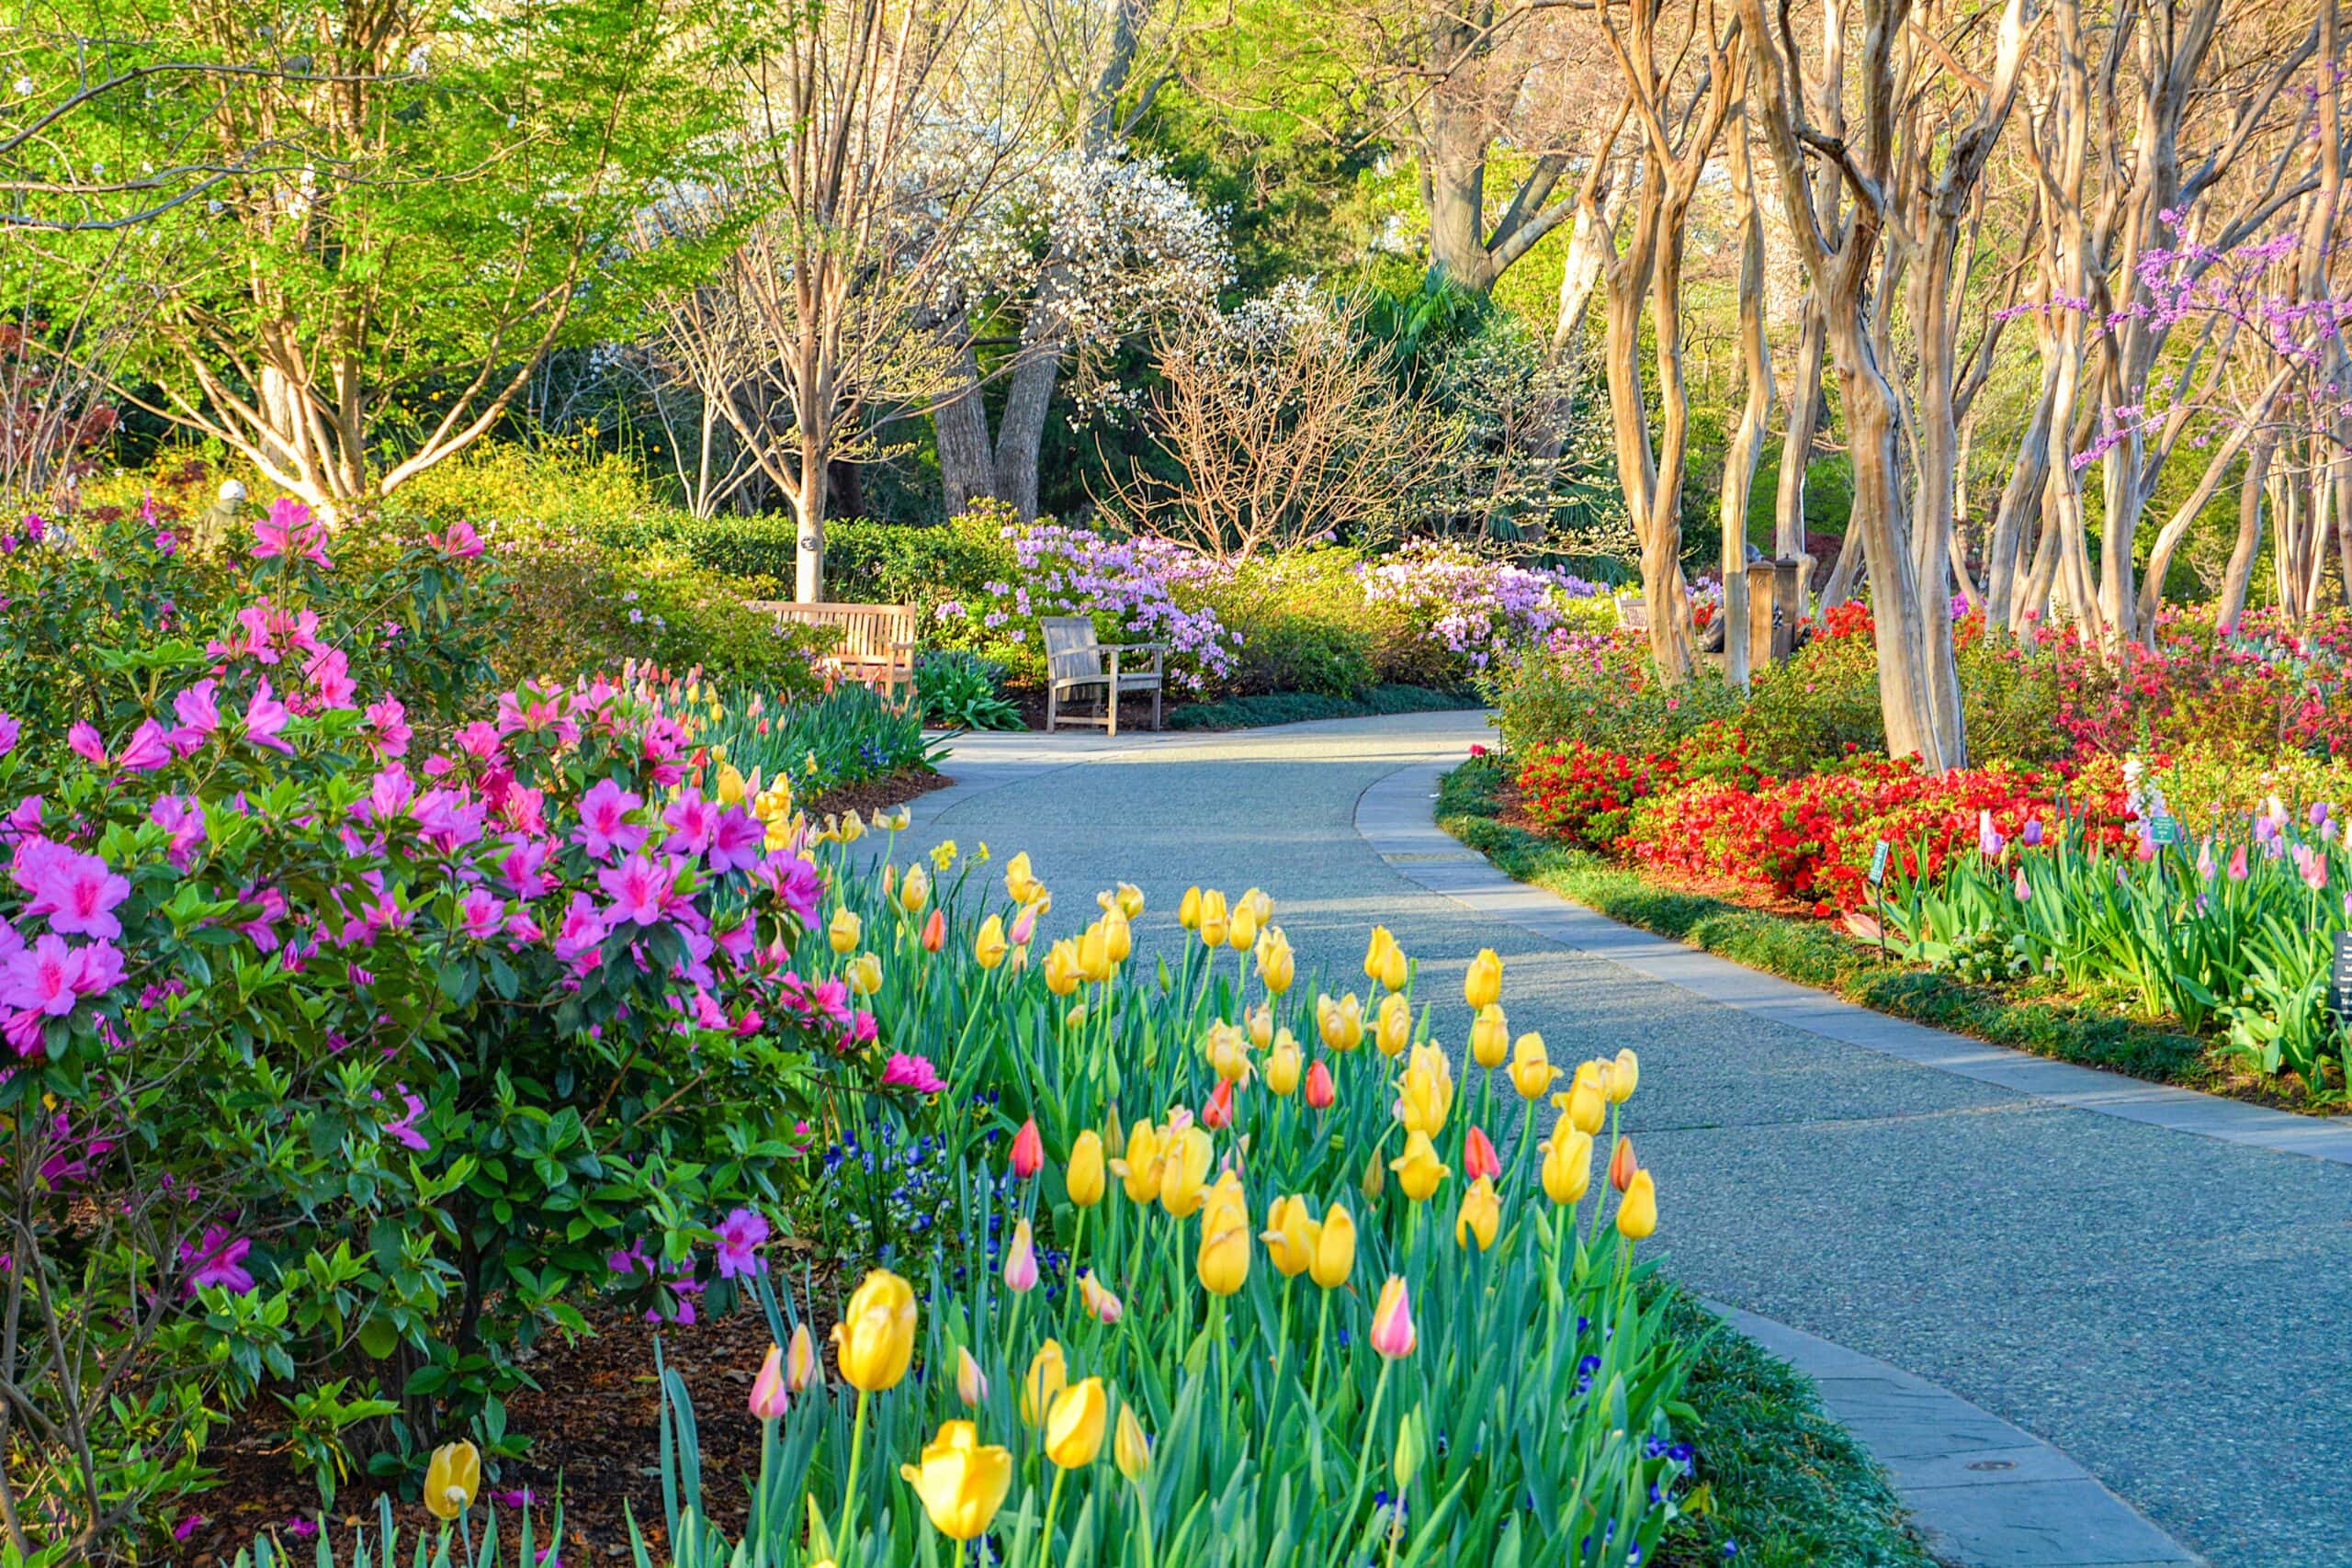 Dallas Blooms opens at Arboretum